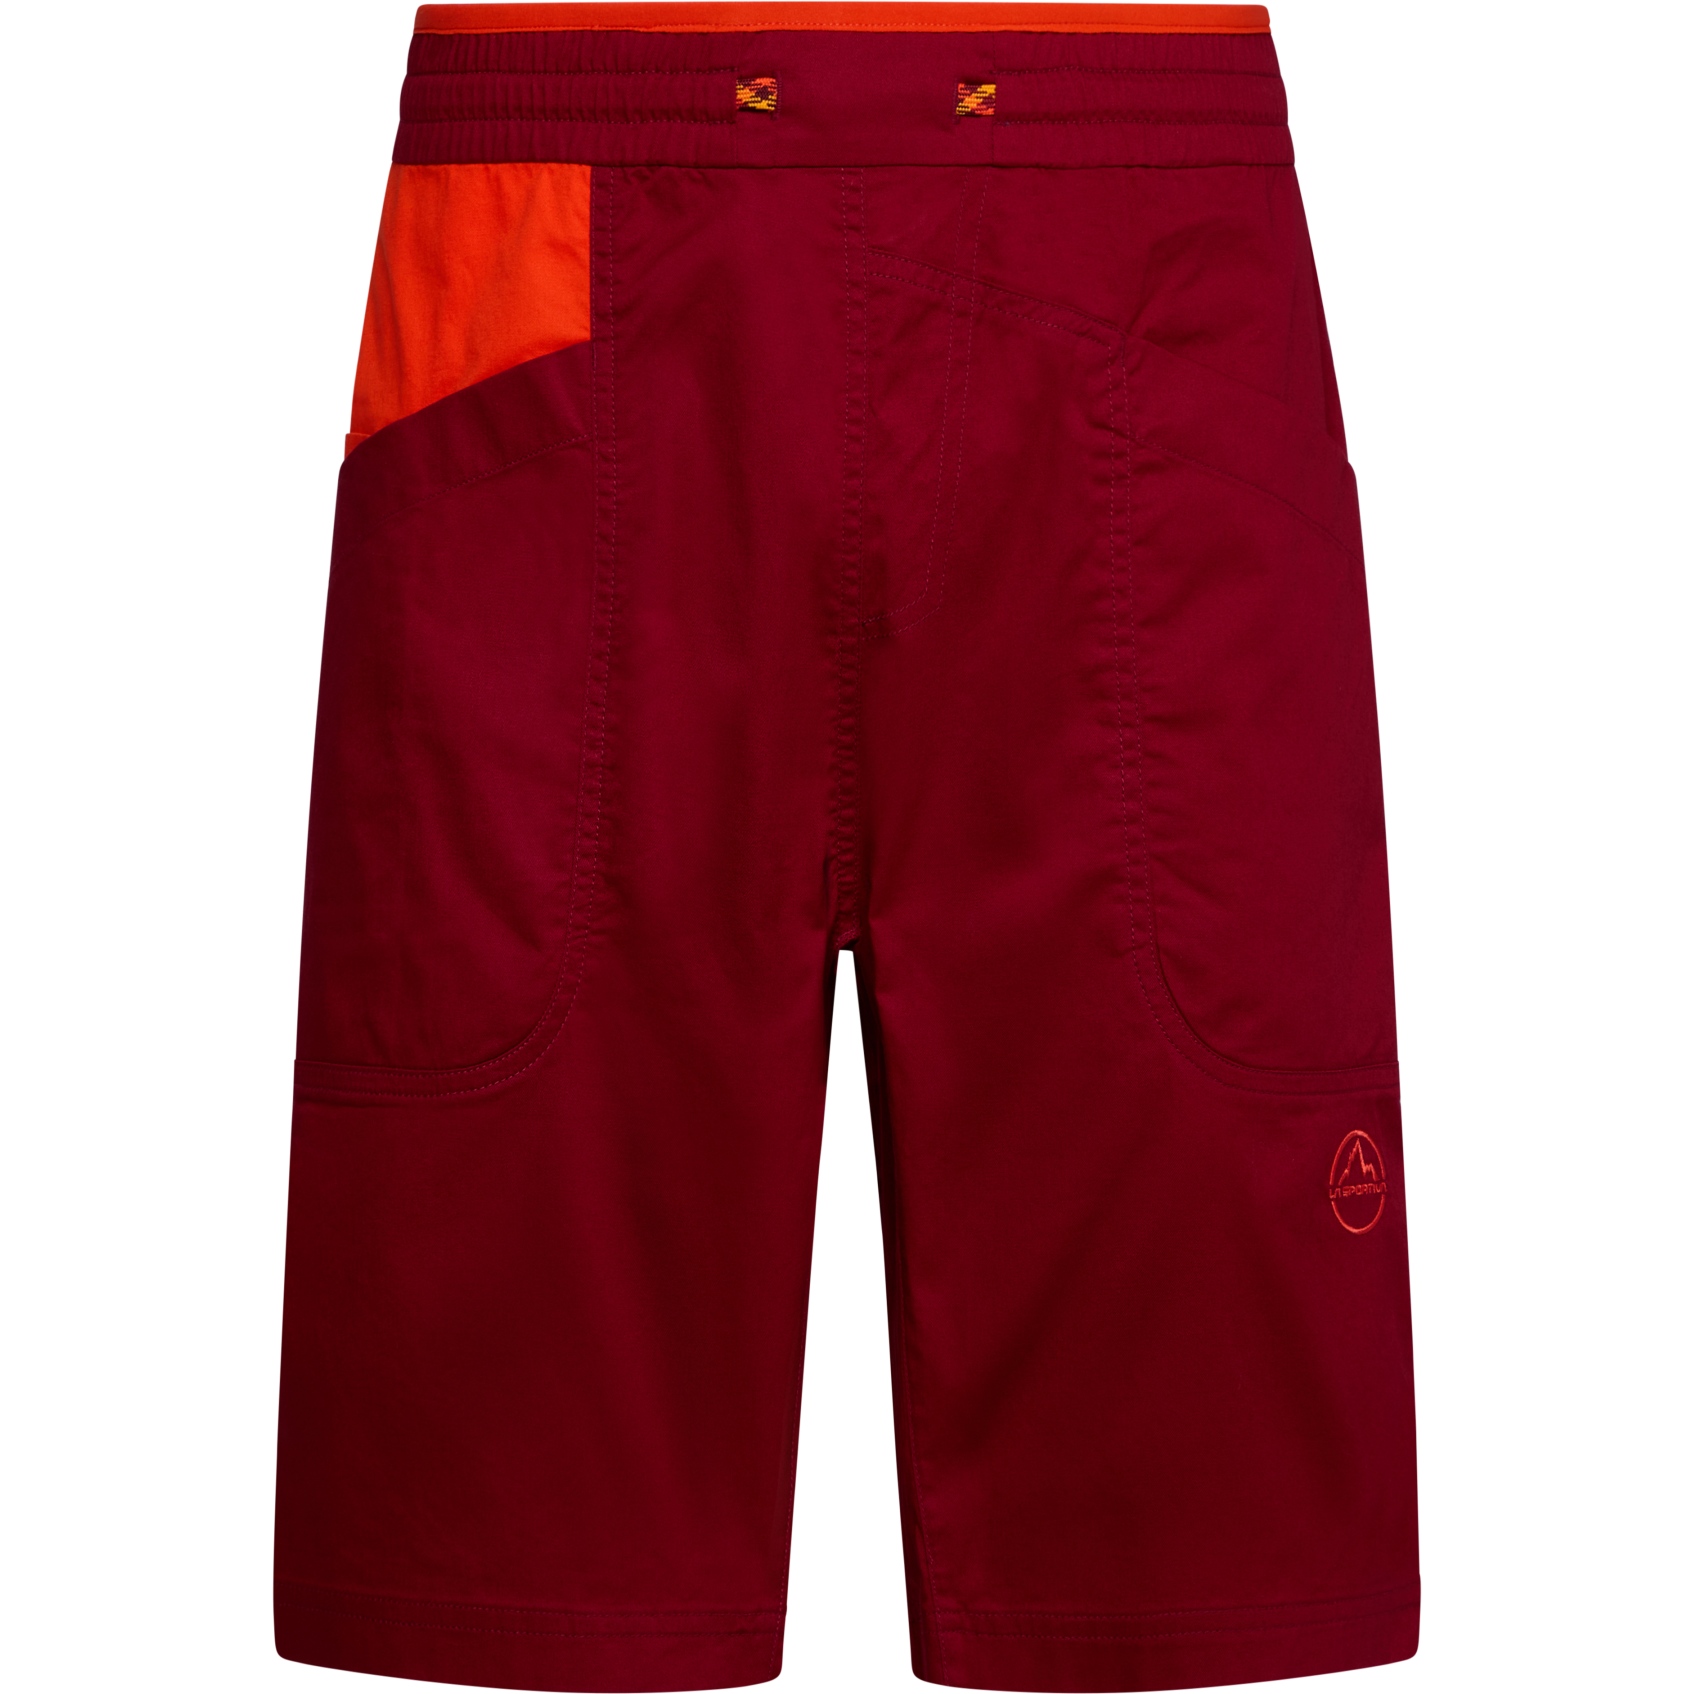 Productfoto van La Sportiva Bleauser Shorts Heren - Sangria/Cherry Tomato